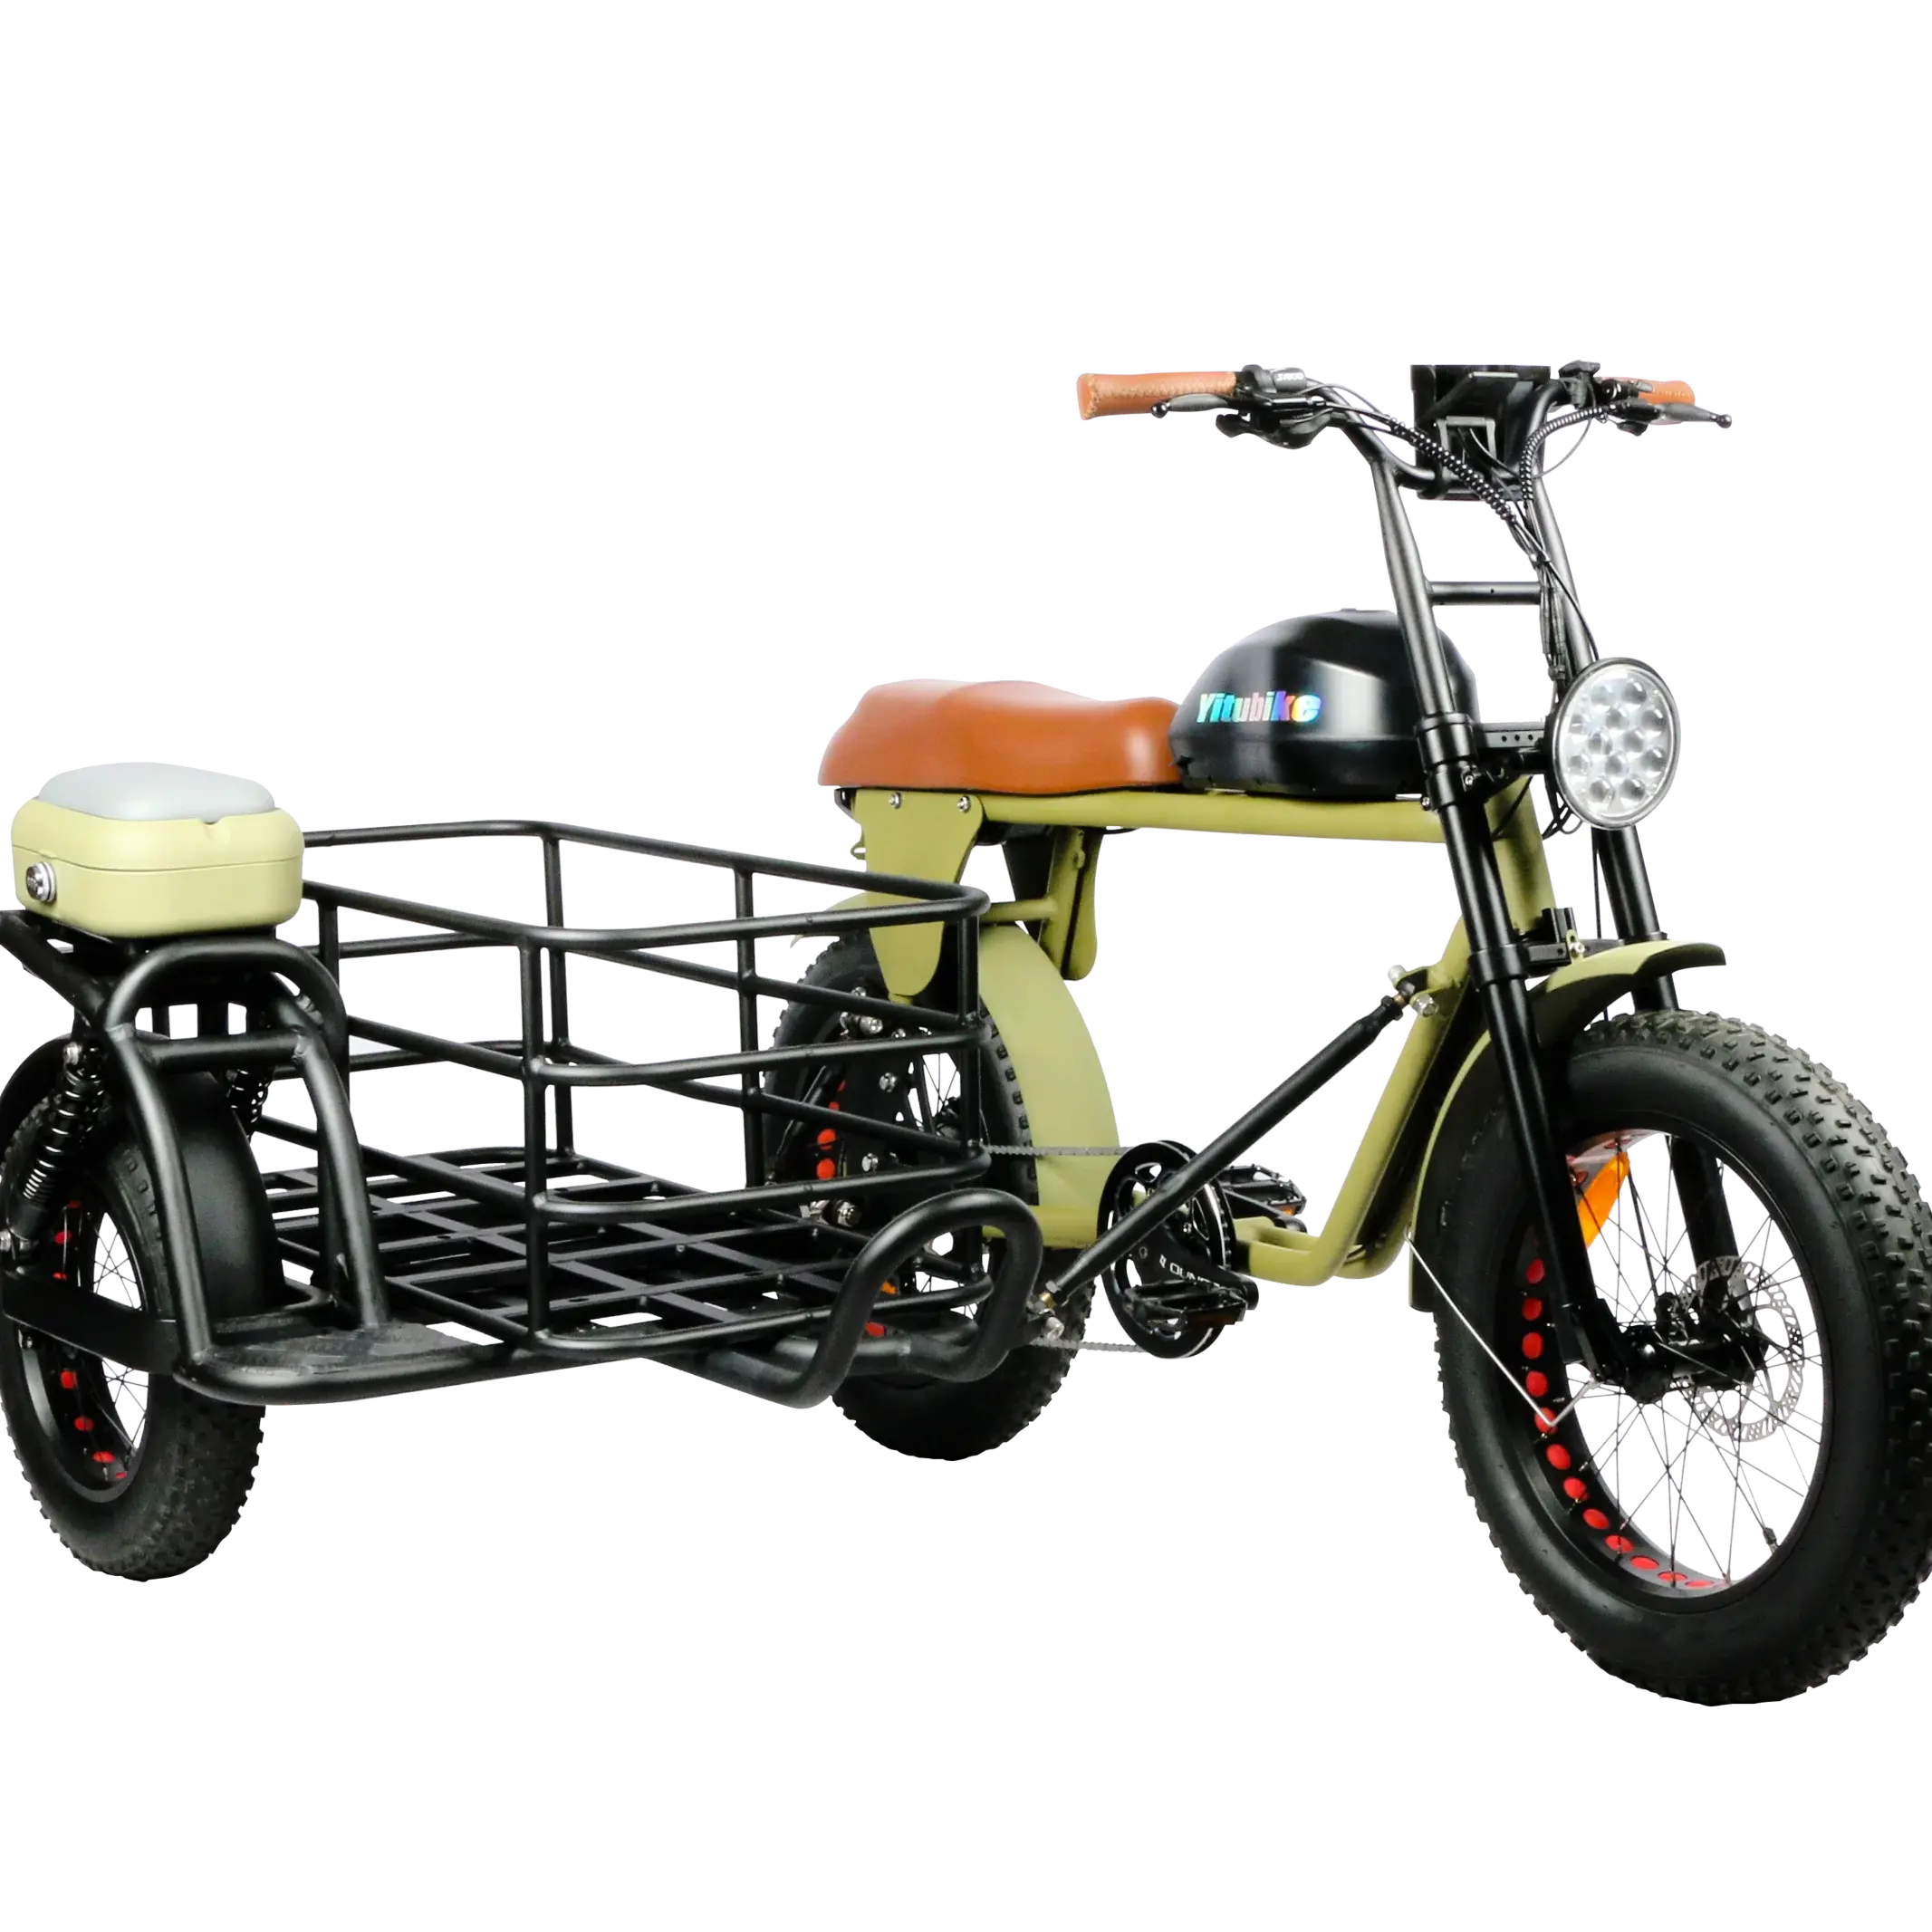 Classique Sports de plein air motos Cruiser adulte vélo électrique side-car trois roues adulte cargo vélo électrique avec panier vente